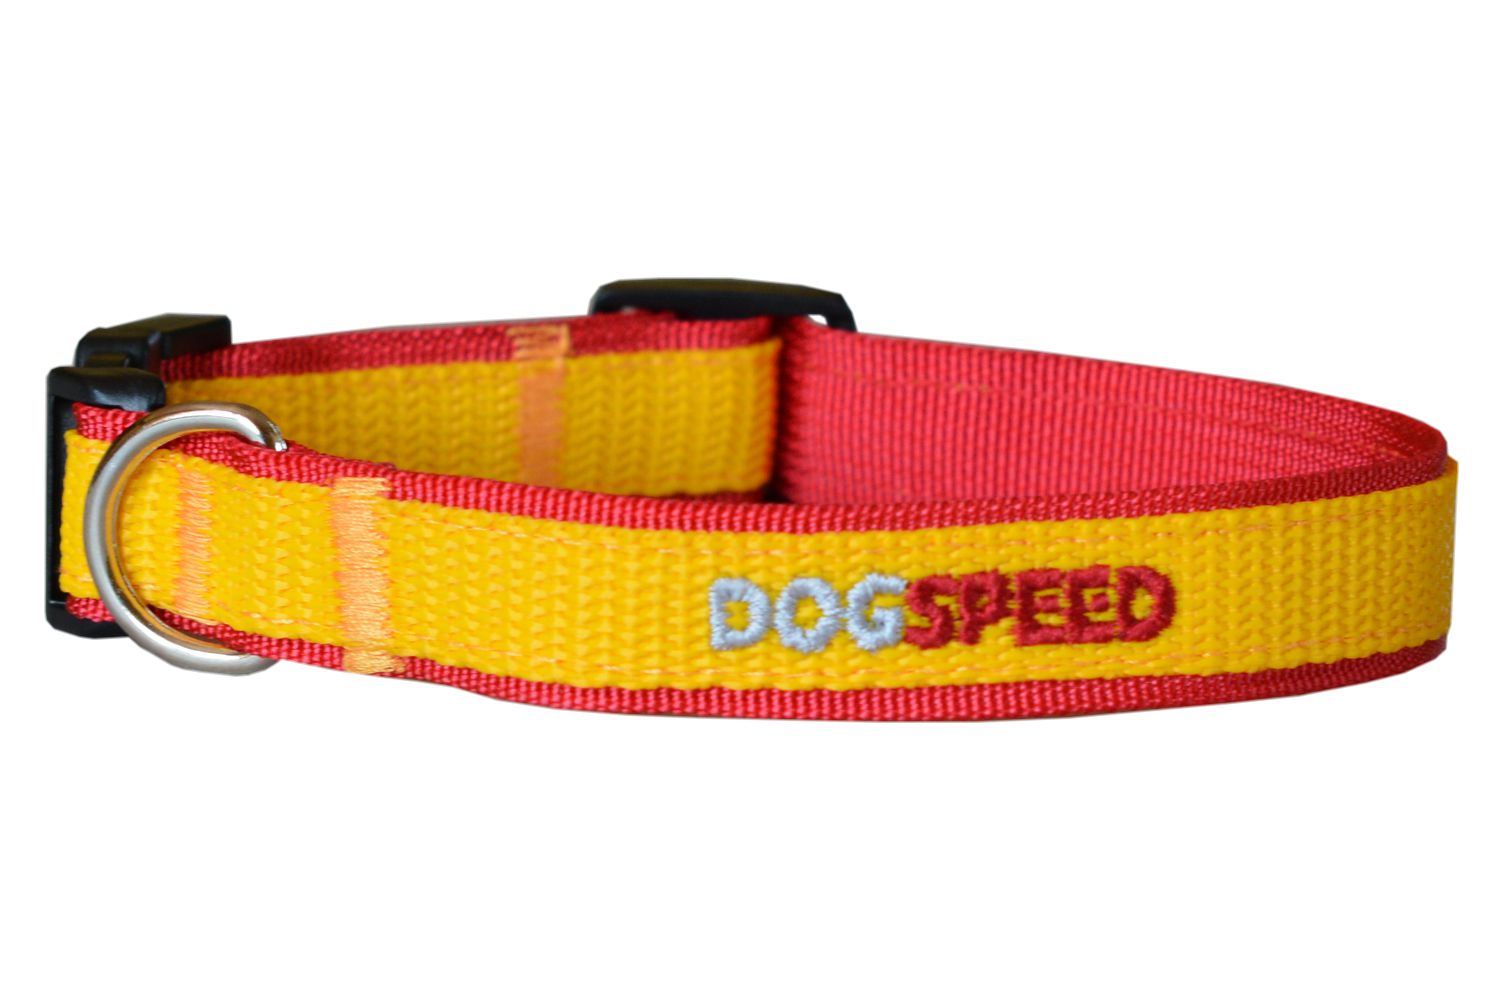 Obroża dla psa czerwono-żółta, możliwa personalizacja np. imię psa, szer. 2cm 